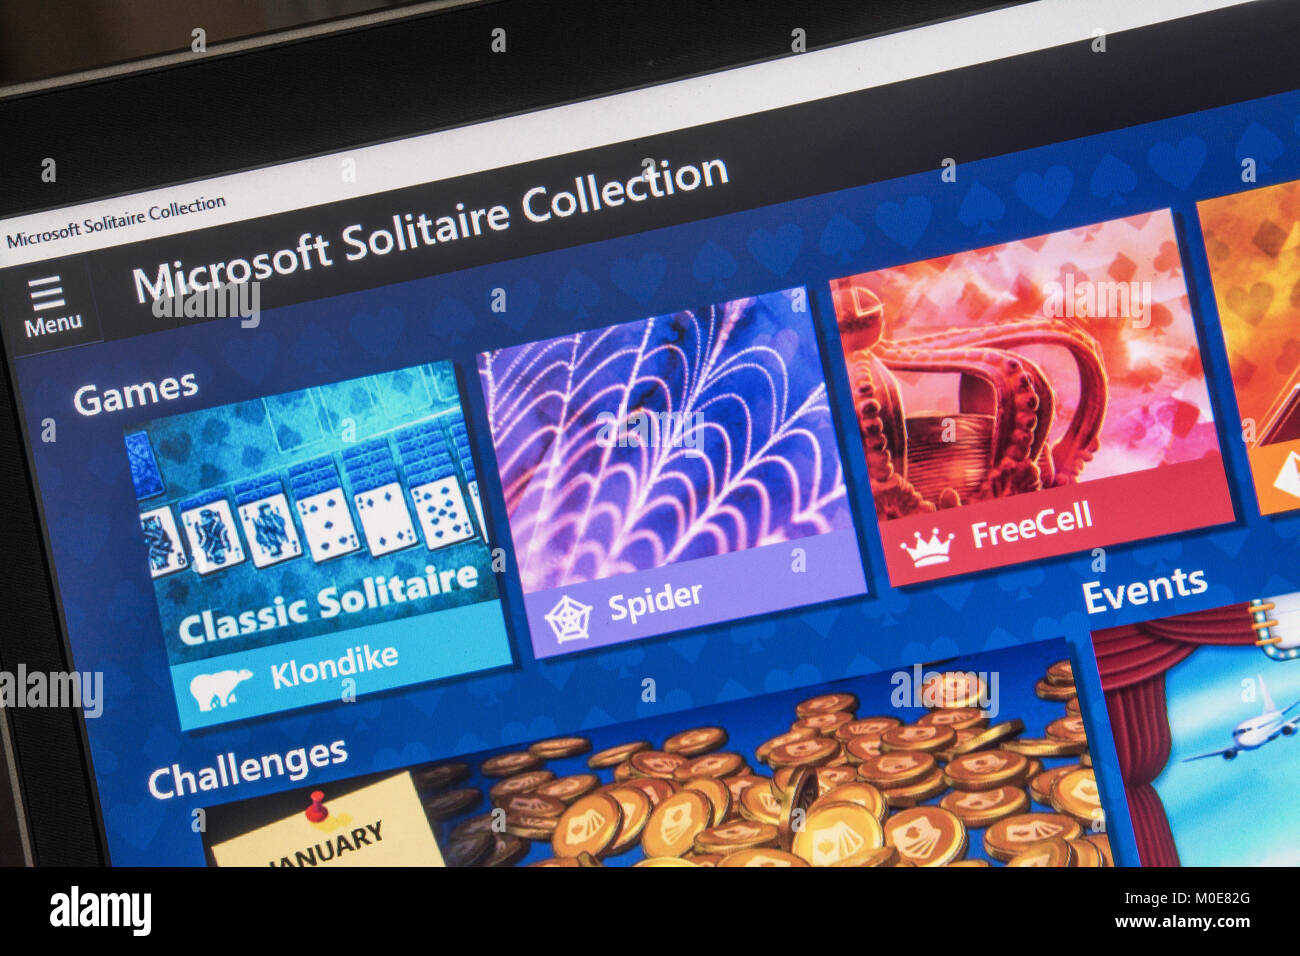 Capture d'écran de l'ordinateur de Microsoft solitaire collection Banque D'Images